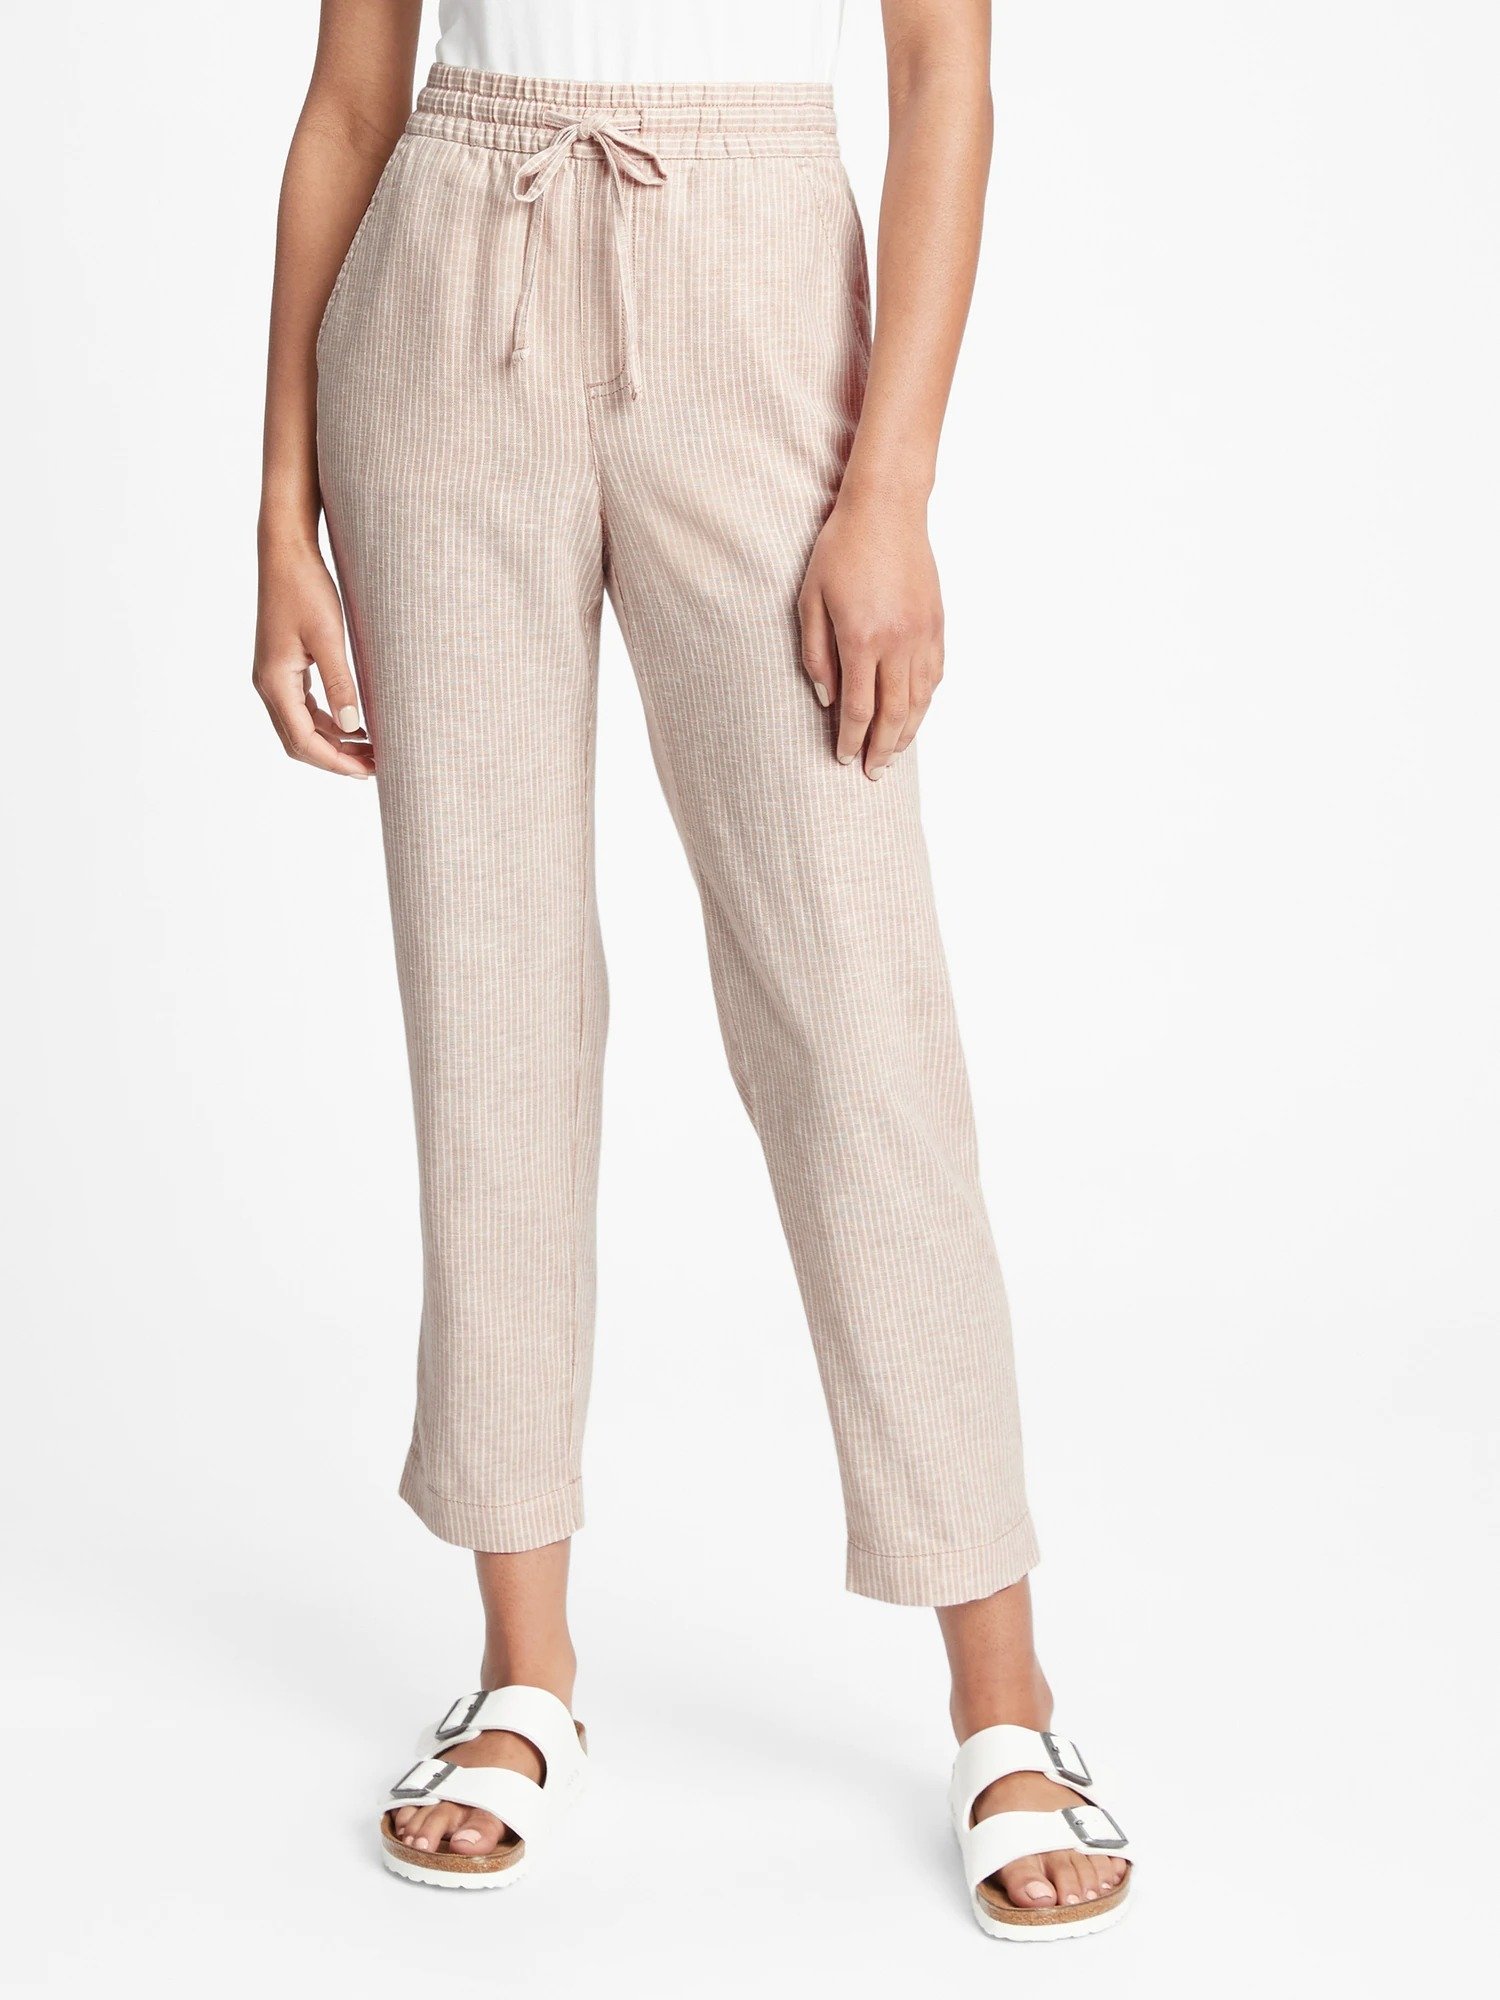 Washwell™ Khaki Pantolon product image